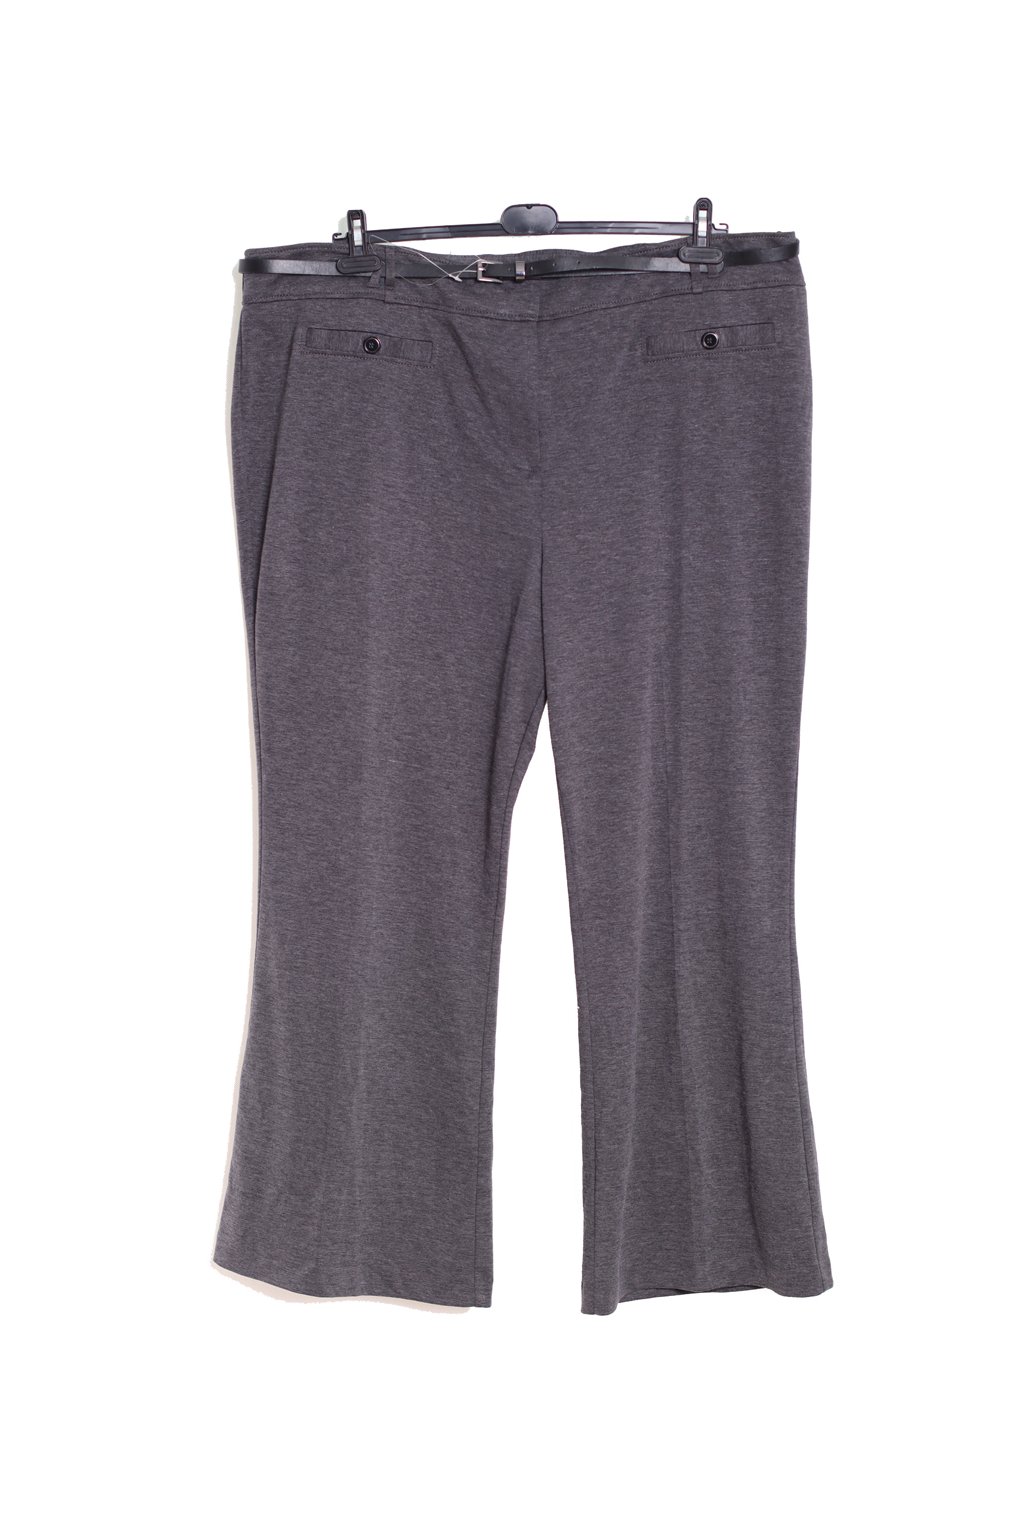 Dámské šedé elegantní teplé zimní kalhoty s páskem / M&Co - XXXXL+ (56) / ANGLIE